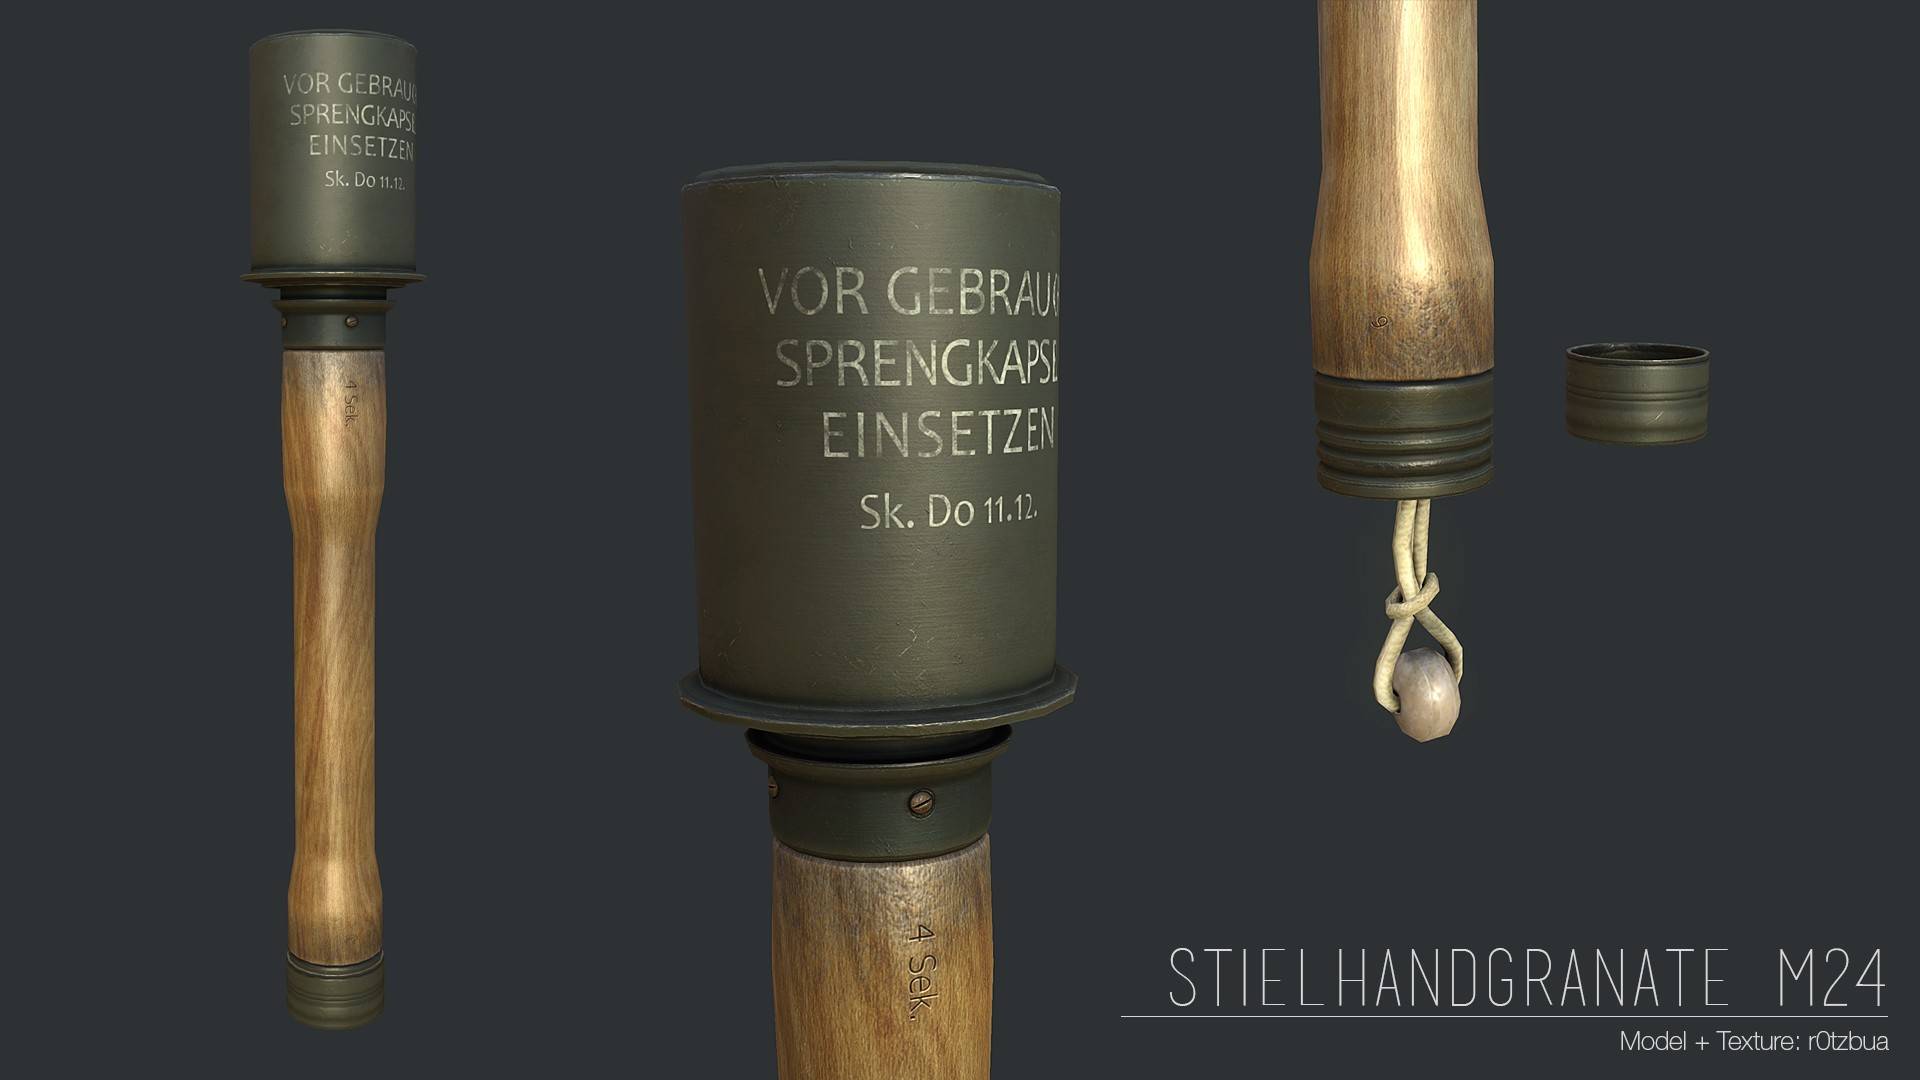 Немецкая граната "колотушка" - stielhandgranaten 24, м24 - вооружение